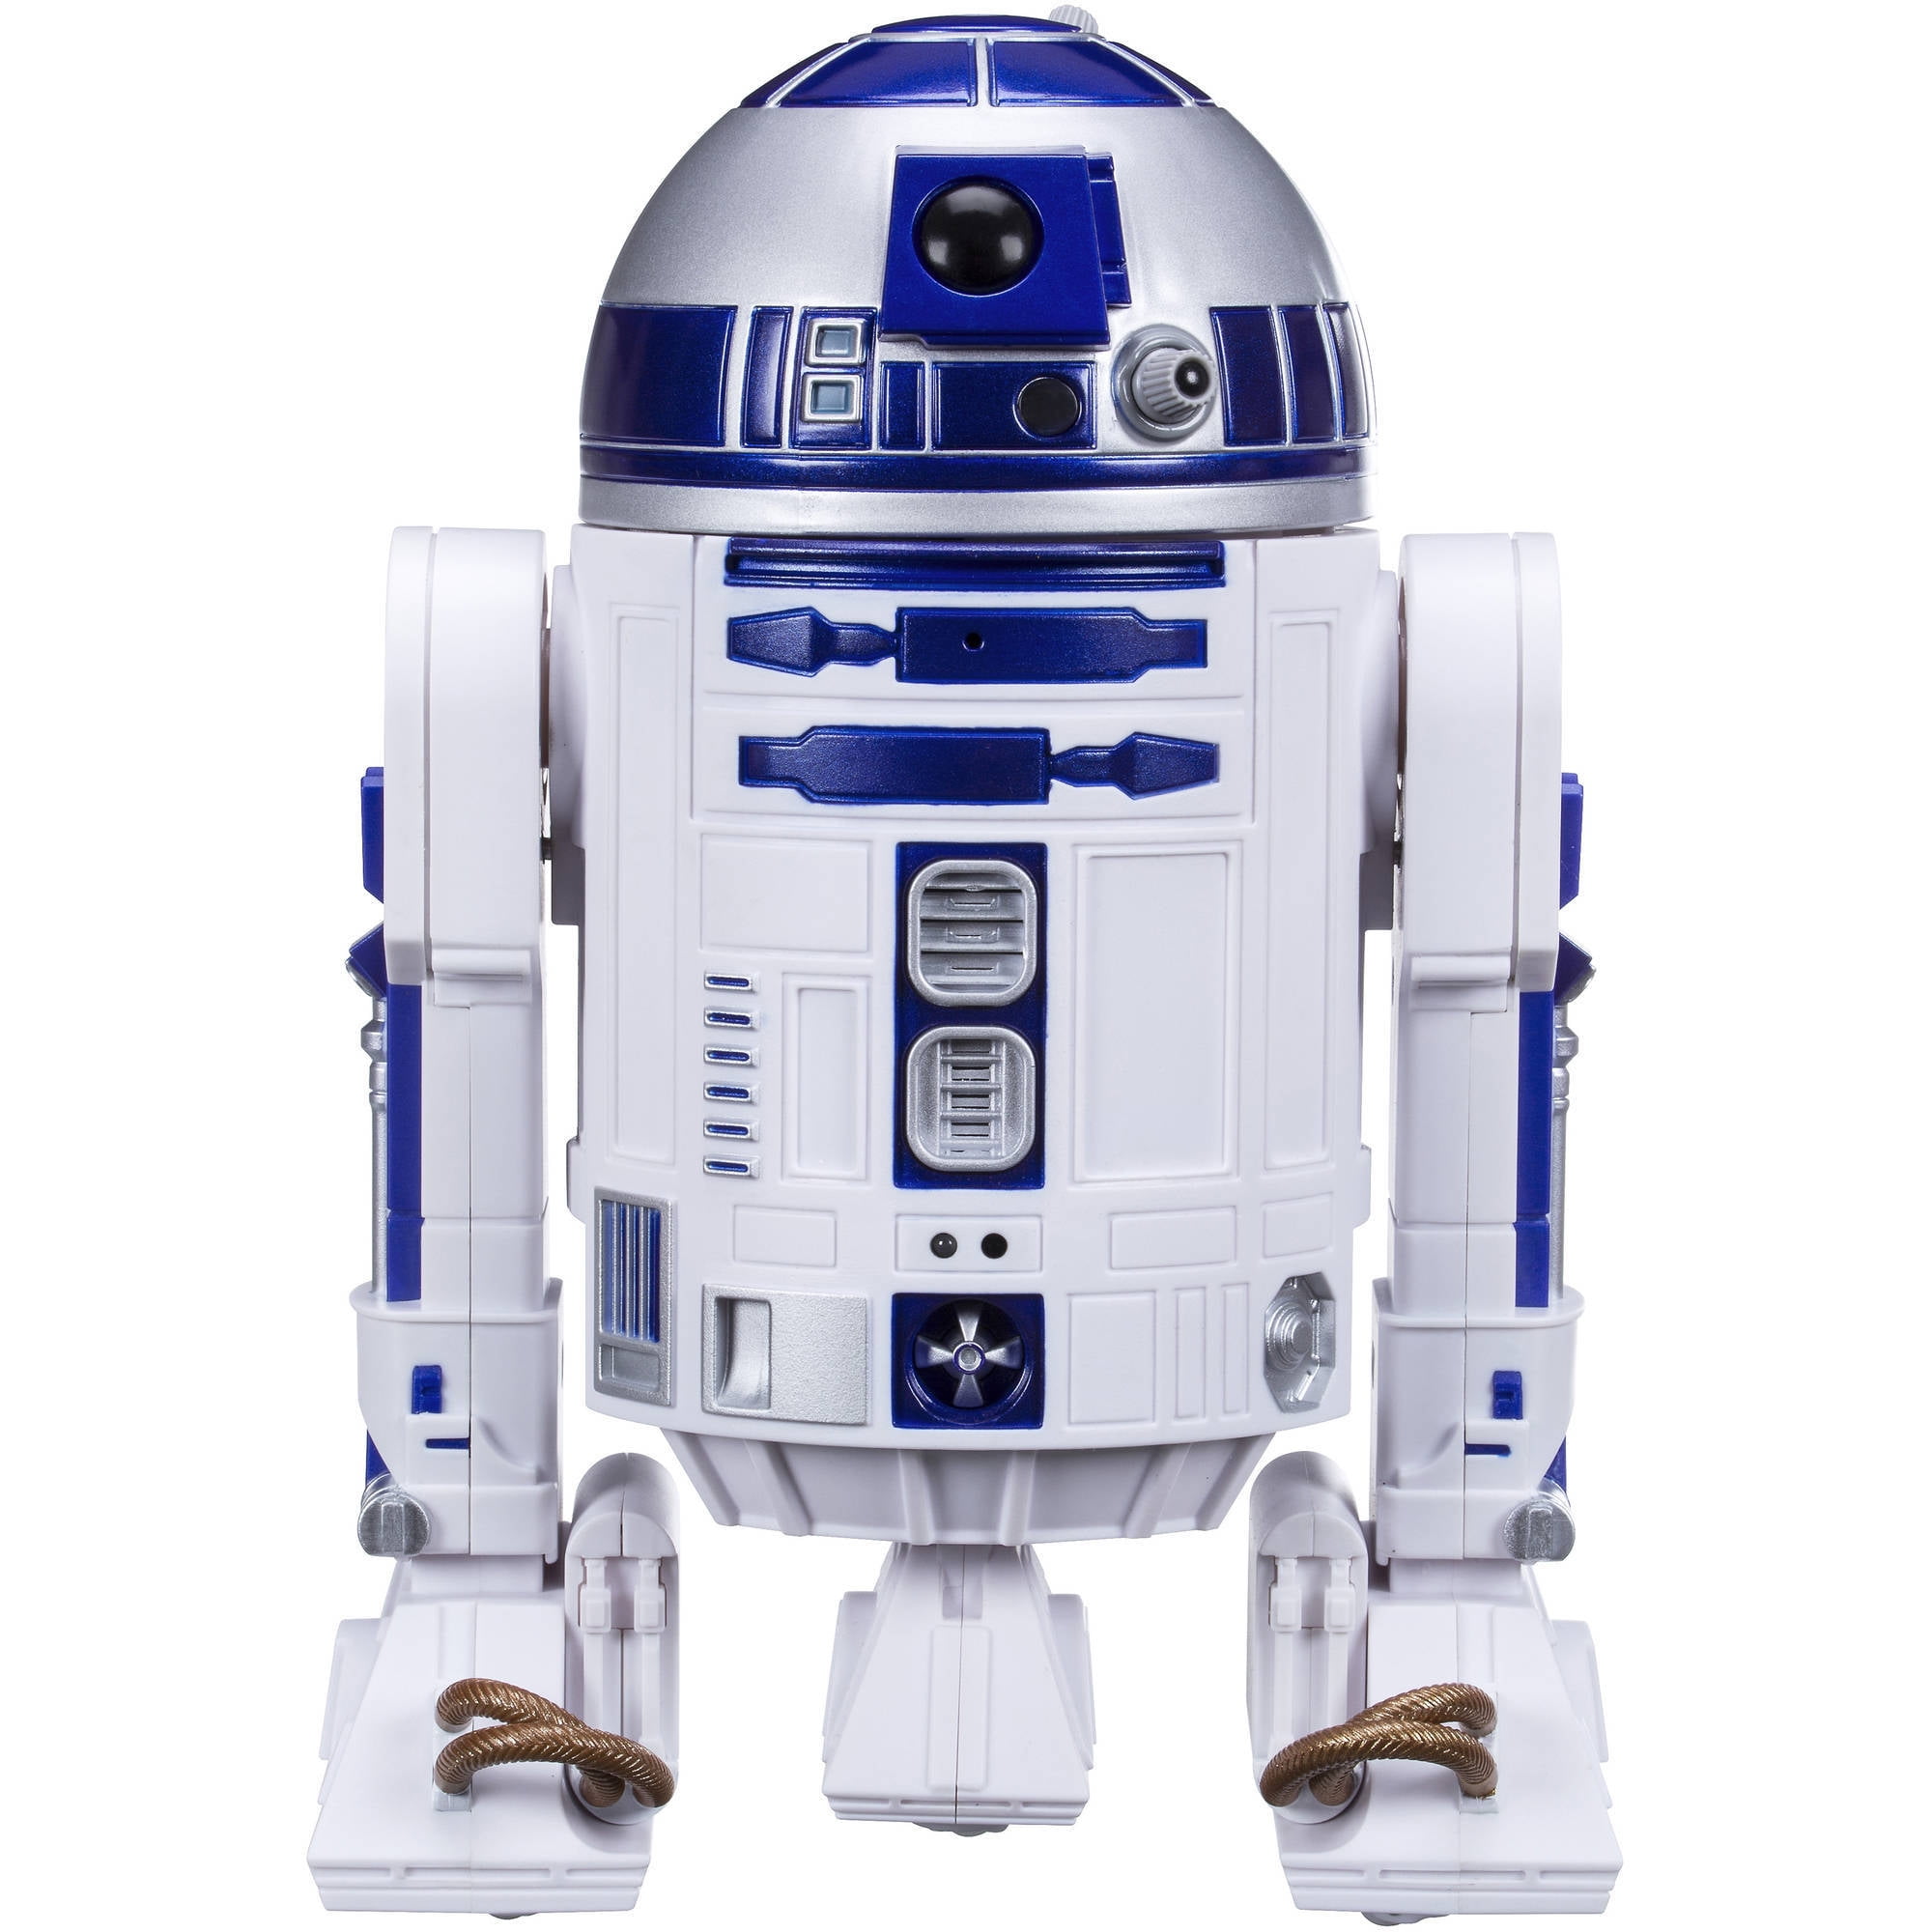 Star Wars Smart R2 D2